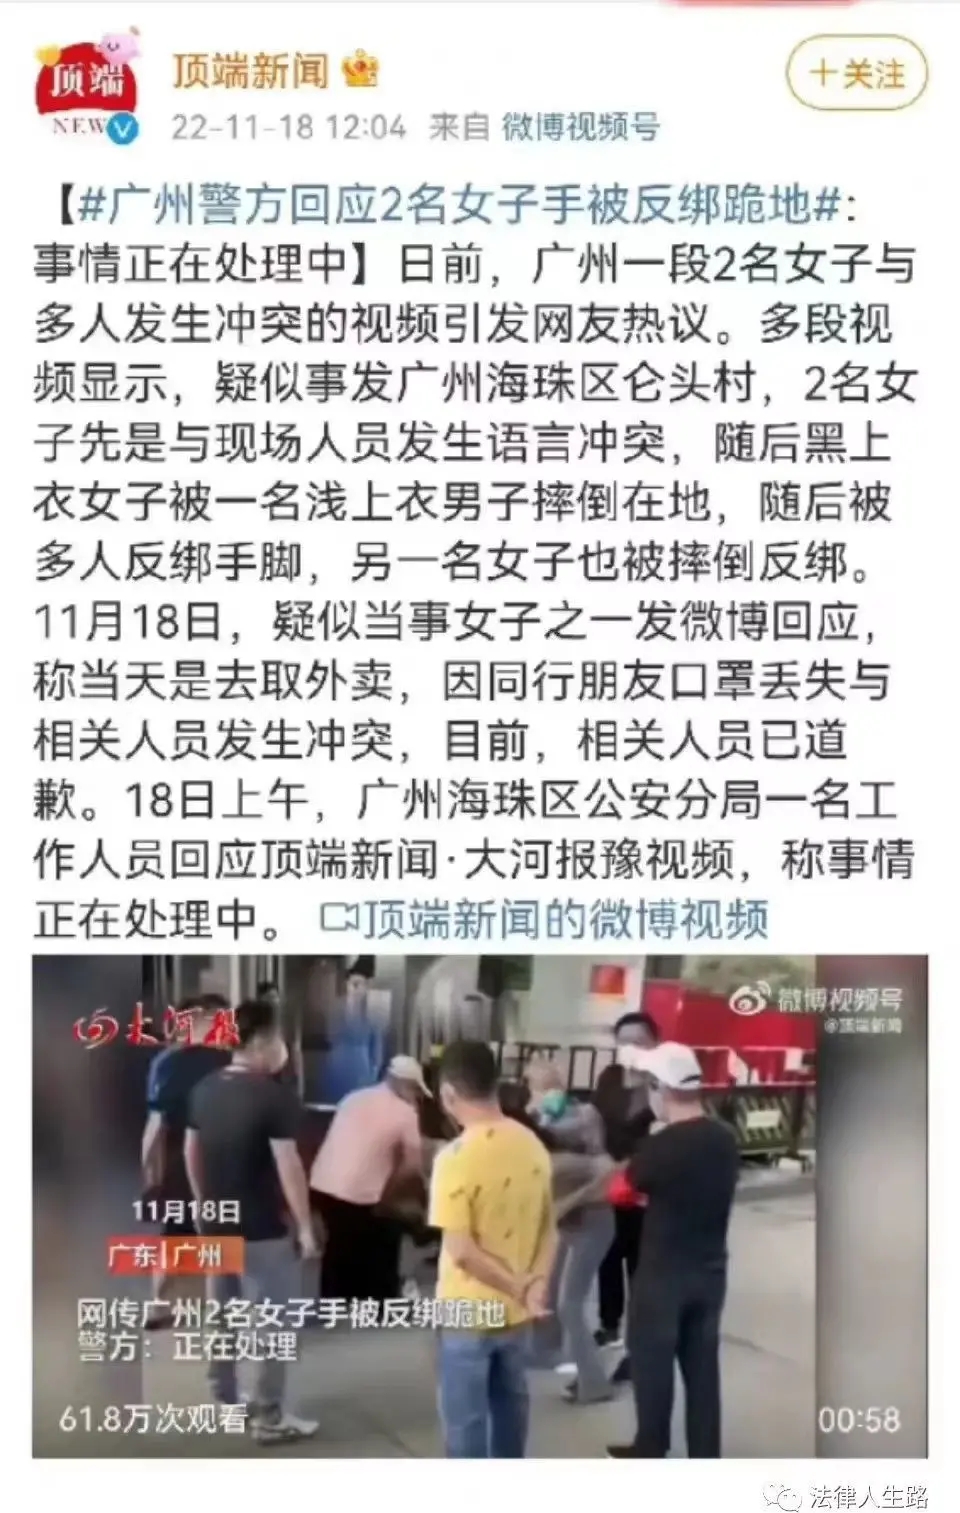 关于广州被绑架事件:不应使用犯罪手段处理违法行为